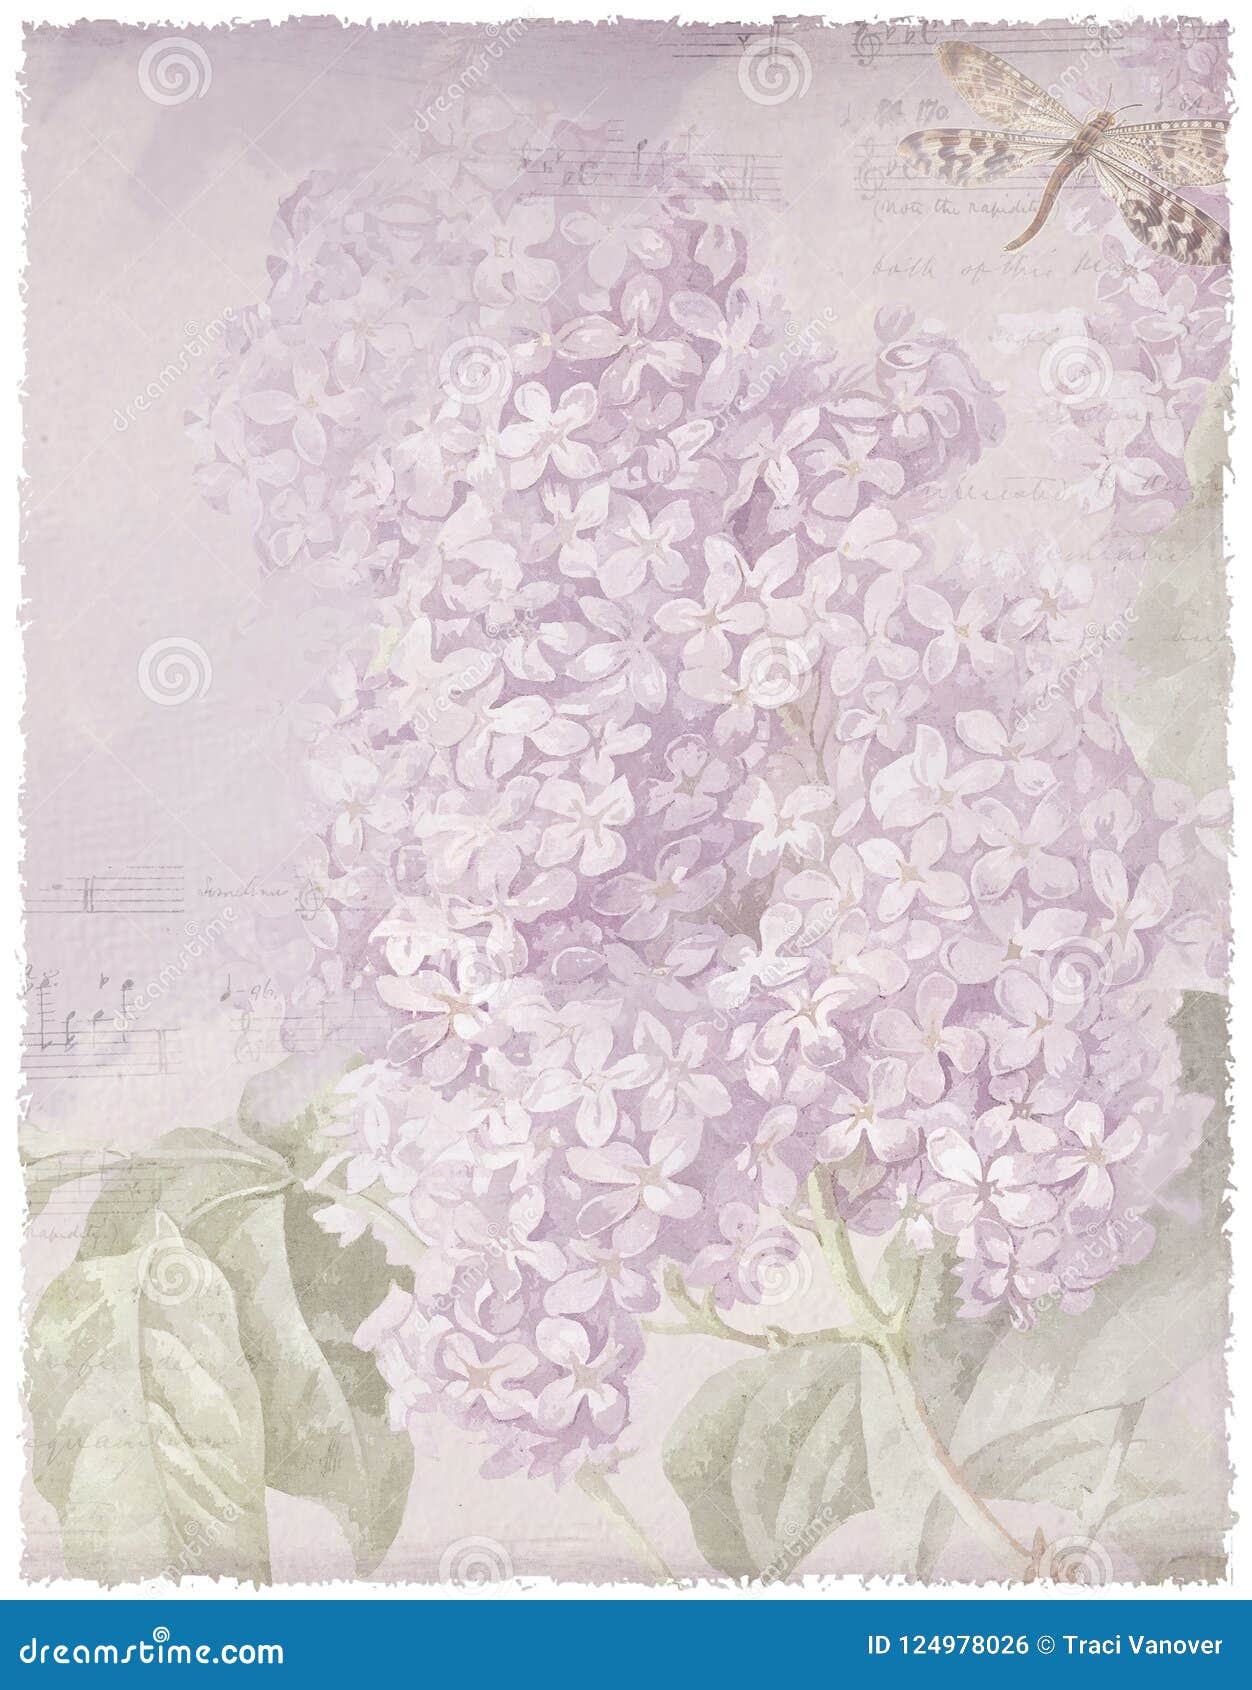 Hãy chiêm ngưỡng sự pha trộn độc đáo giữa hình nền giấy cổ Pháp với hoa oải hương màu tím. Các màu sắc rực rỡ và hài hòa sẽ khiến bạn cảm thấy thư giãn và tươi mới. Hãy nhấp chuột để xem những điều thú vị đang chờ đón bạn.